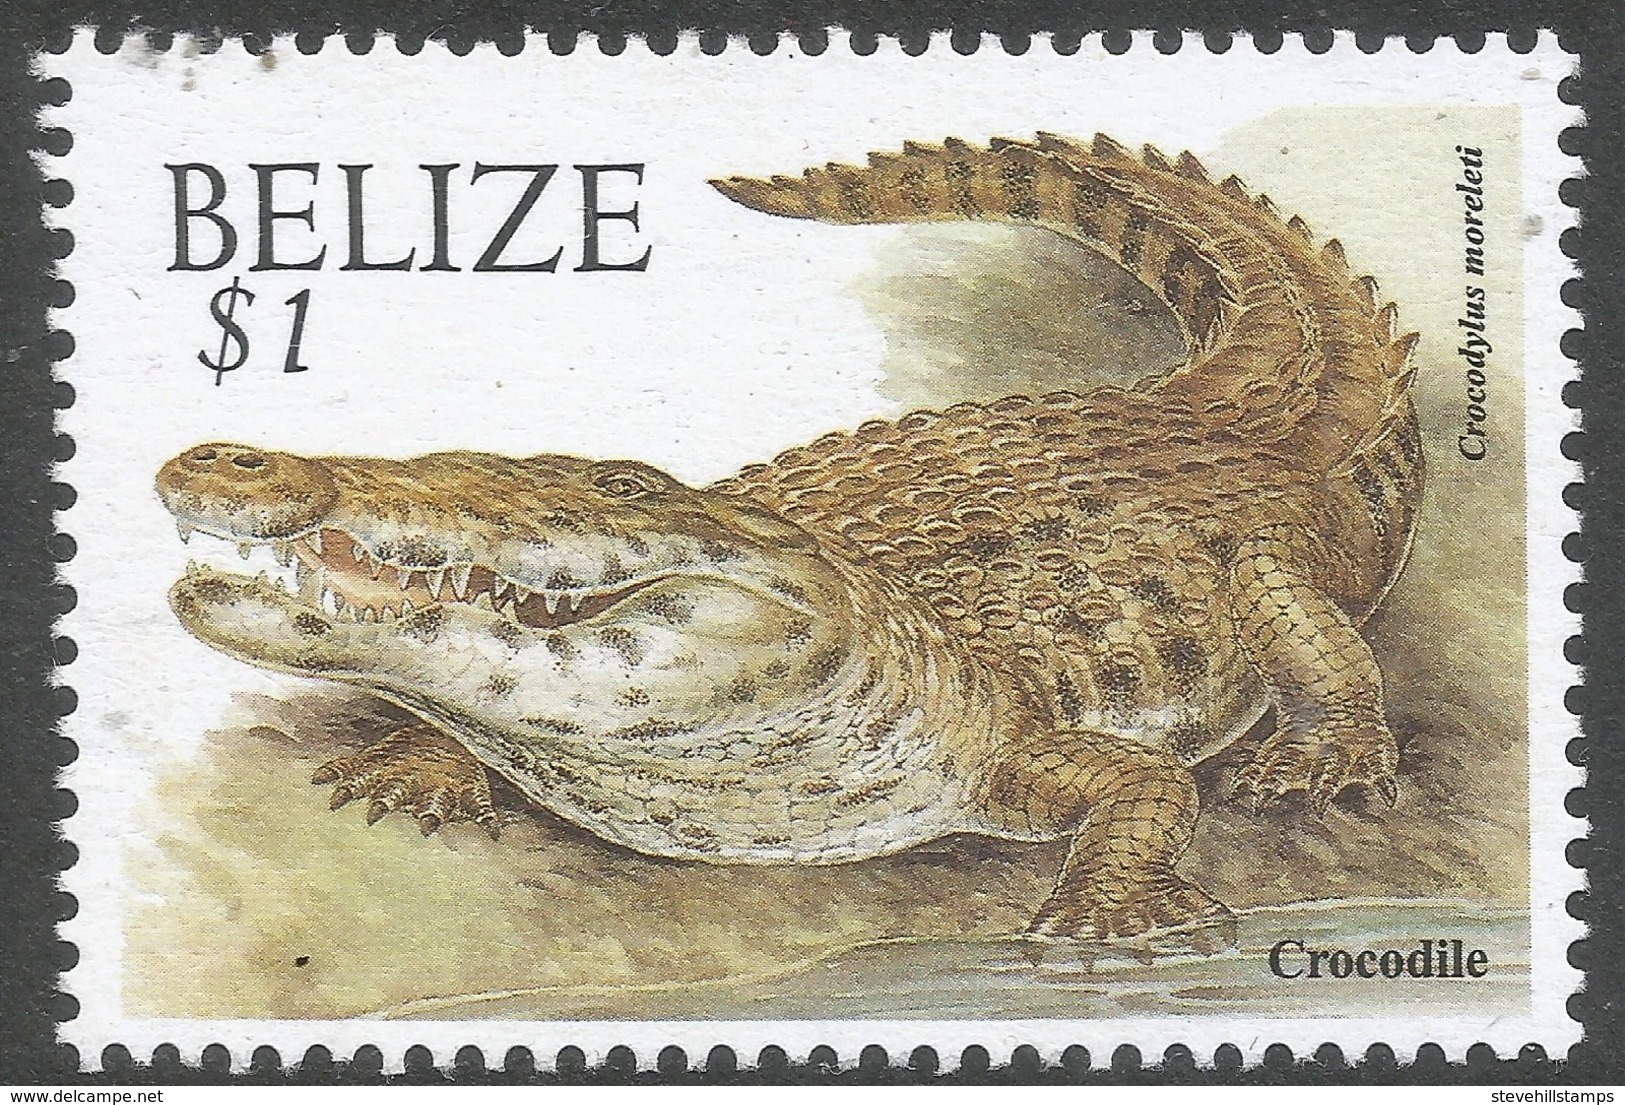 Belize. 2000 Wildlife. $1 MNH. SG 1262 - Belize (1973-...)